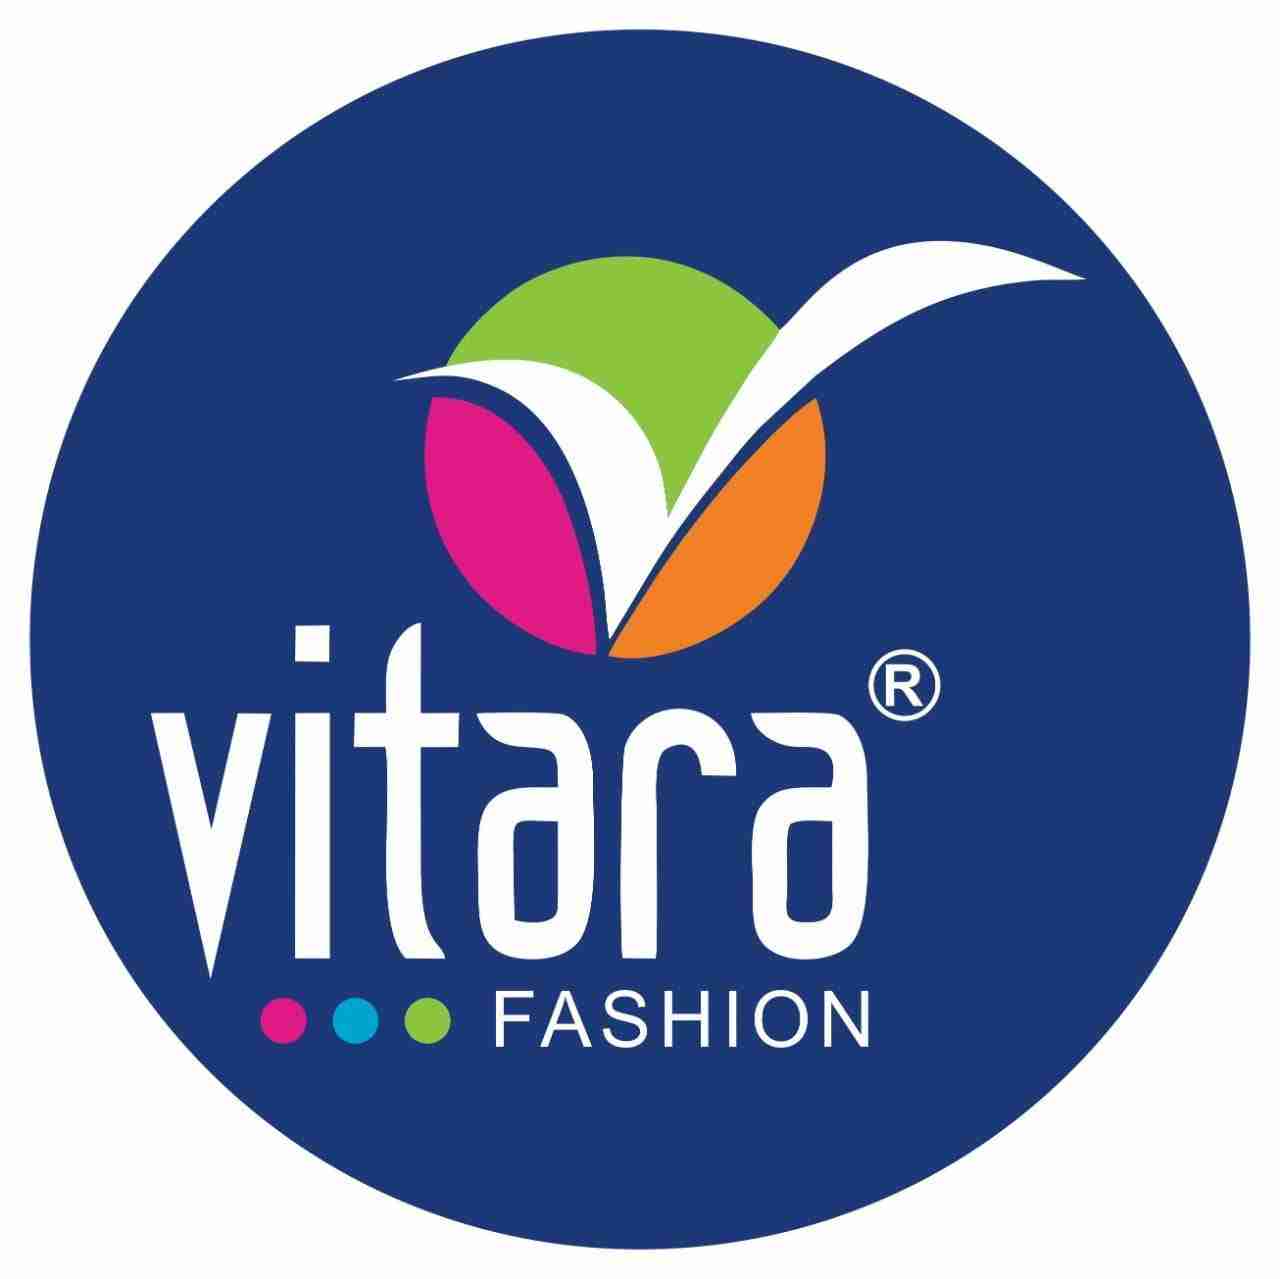 vitara-fashion-